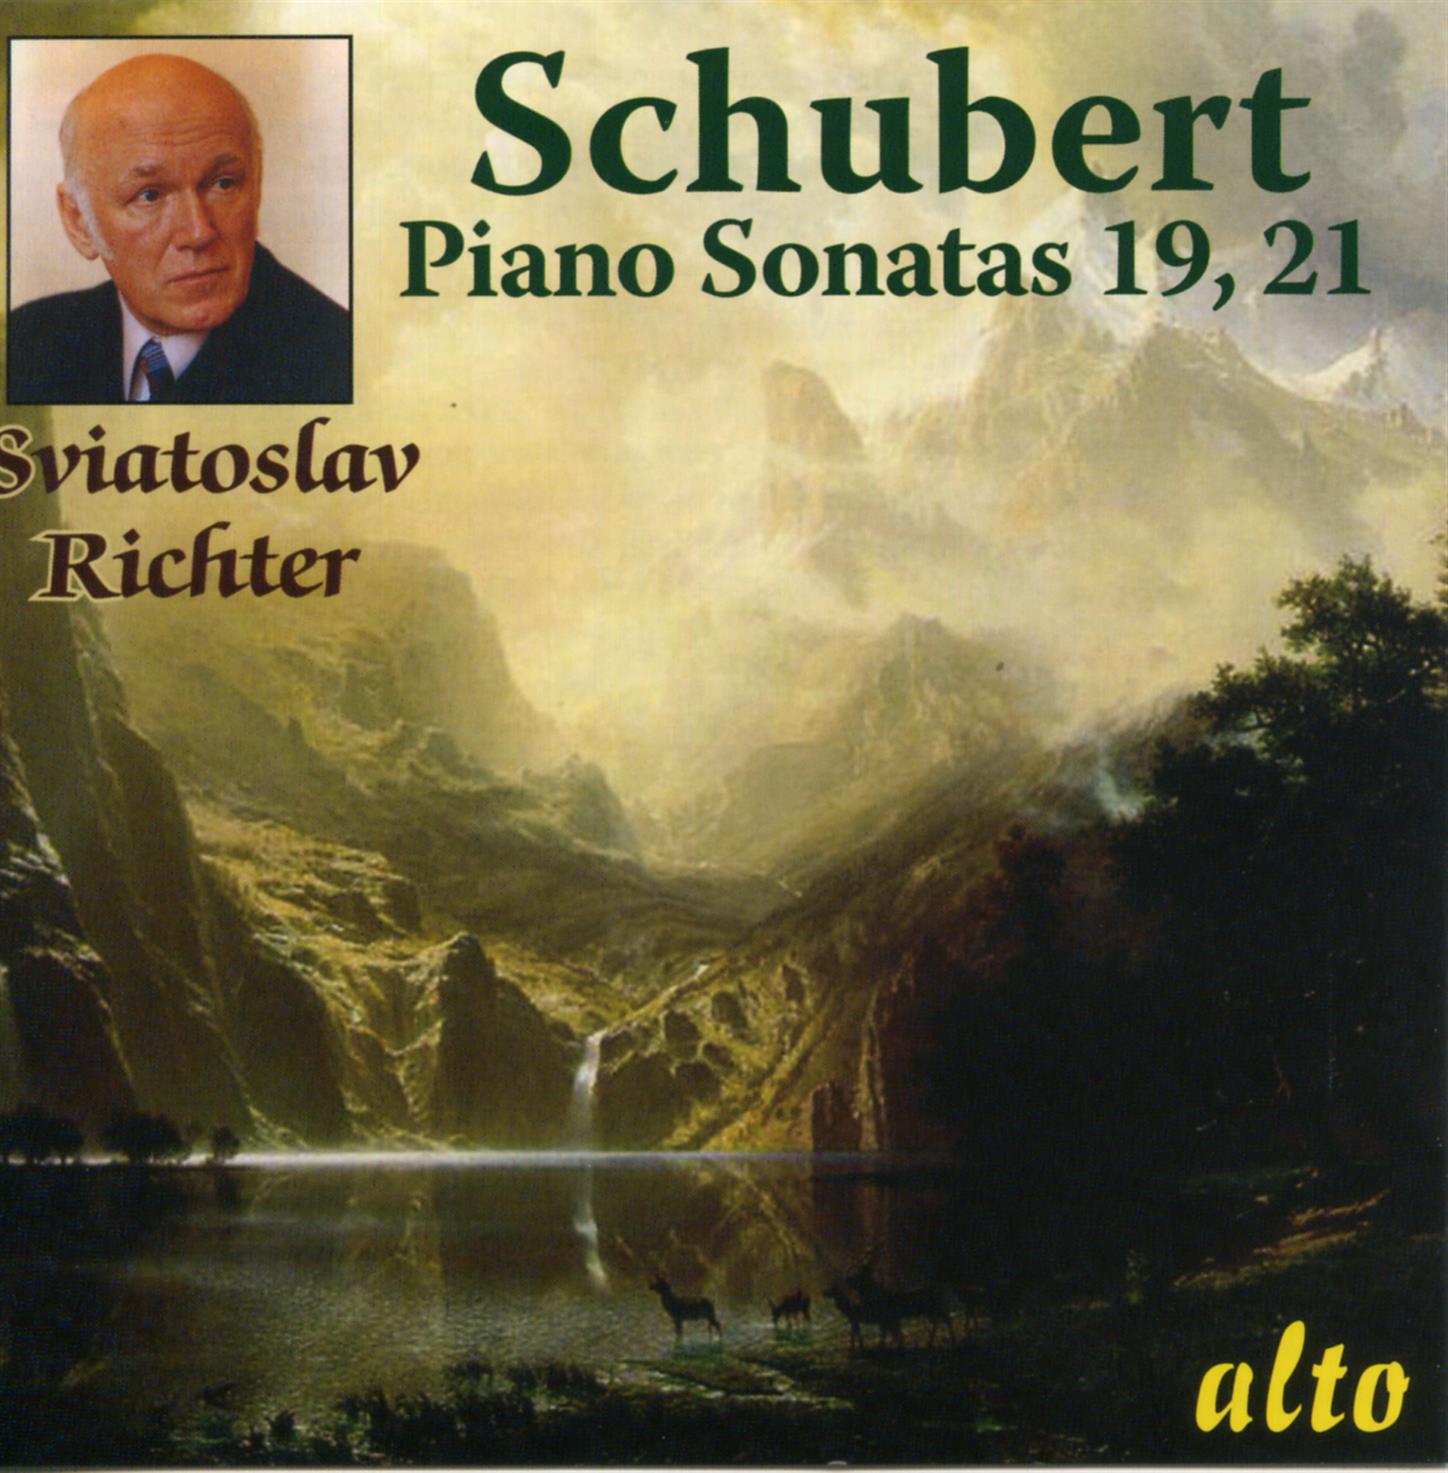 Piano Sonata No. 19 in C minor, Op.posth. (D958): I. Allegro